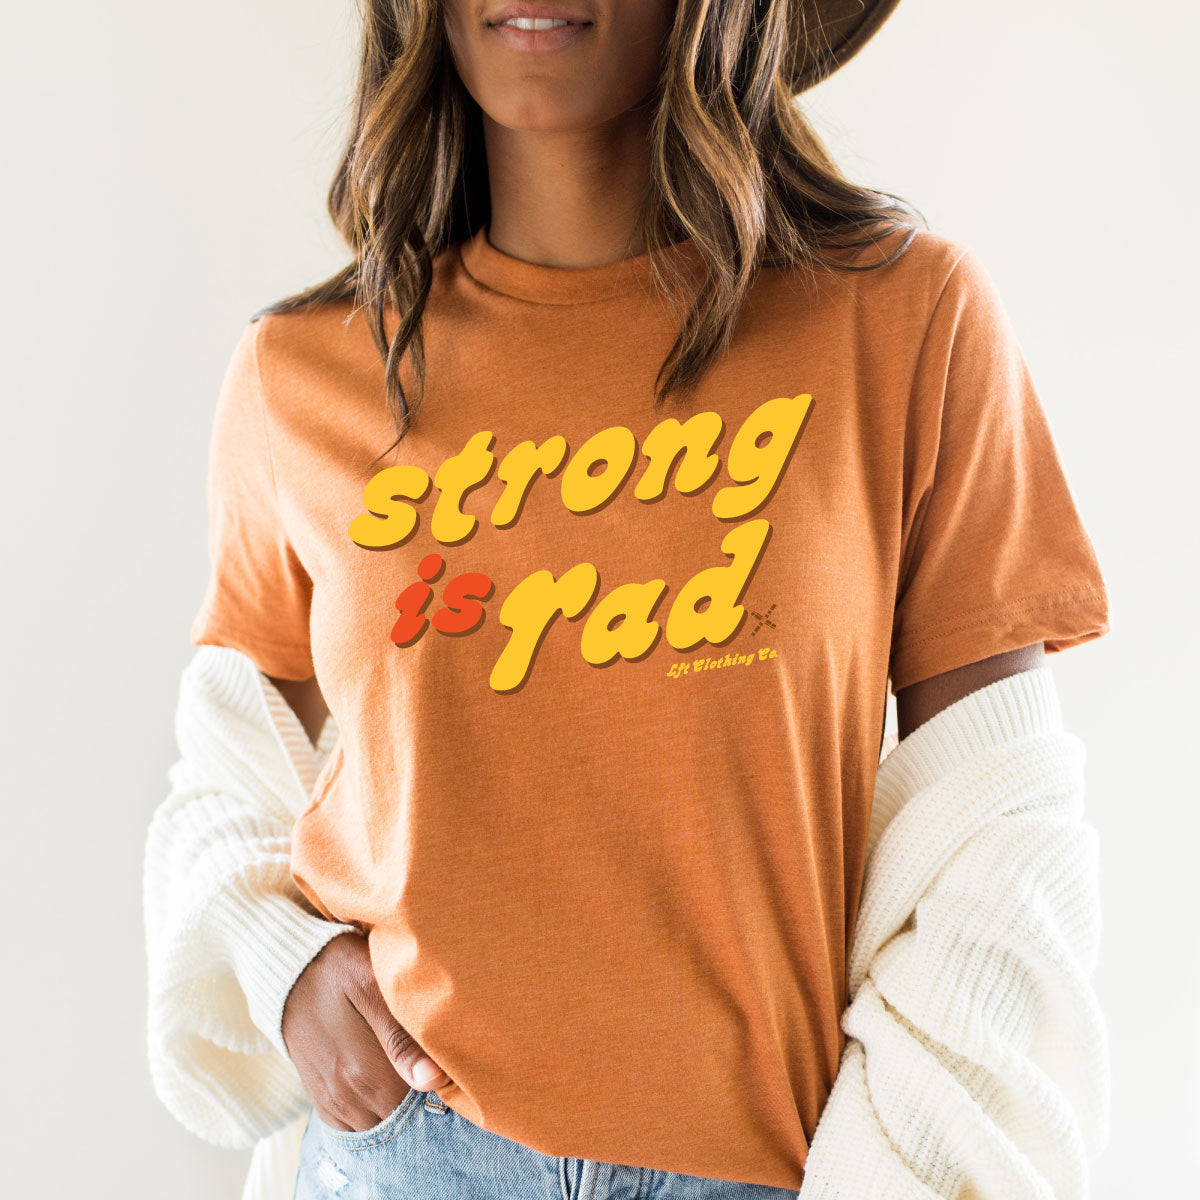 Strong is Rad Unisex Fan Favorite™ Tee